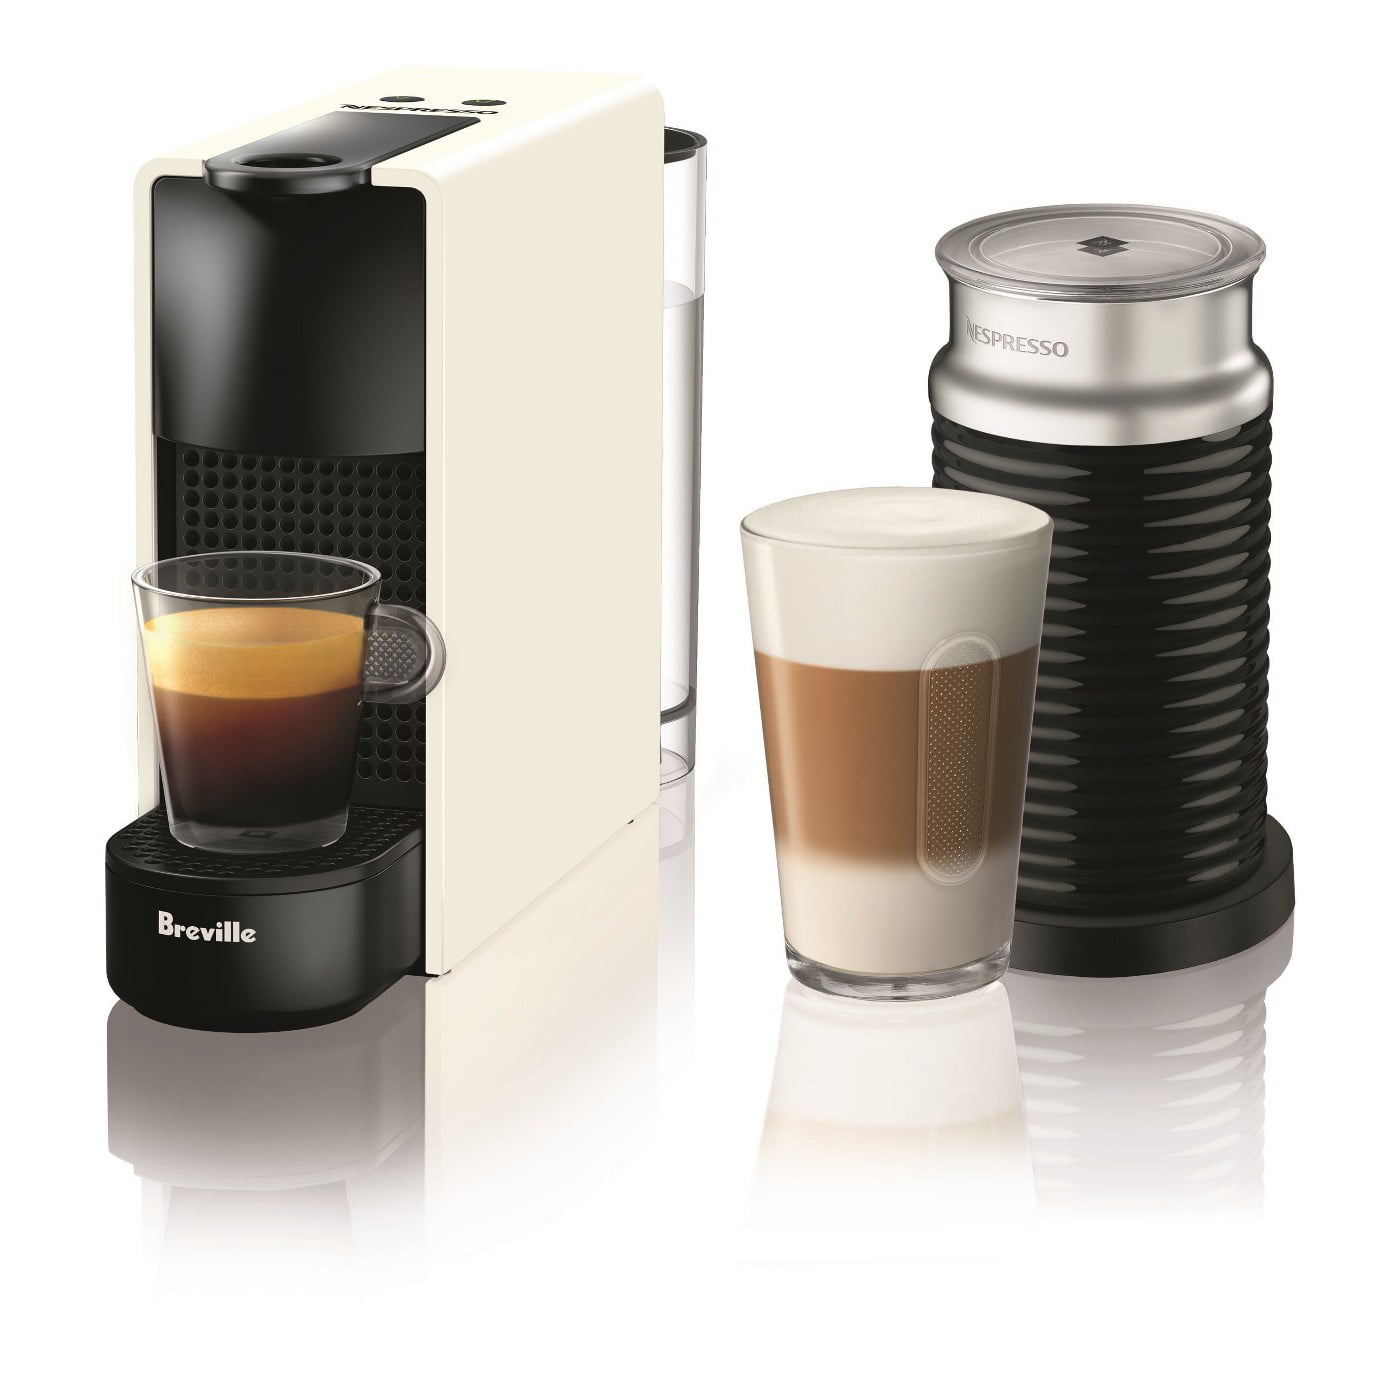 free-nespresso-machine-with-pods-bundle-express-pods-baileys